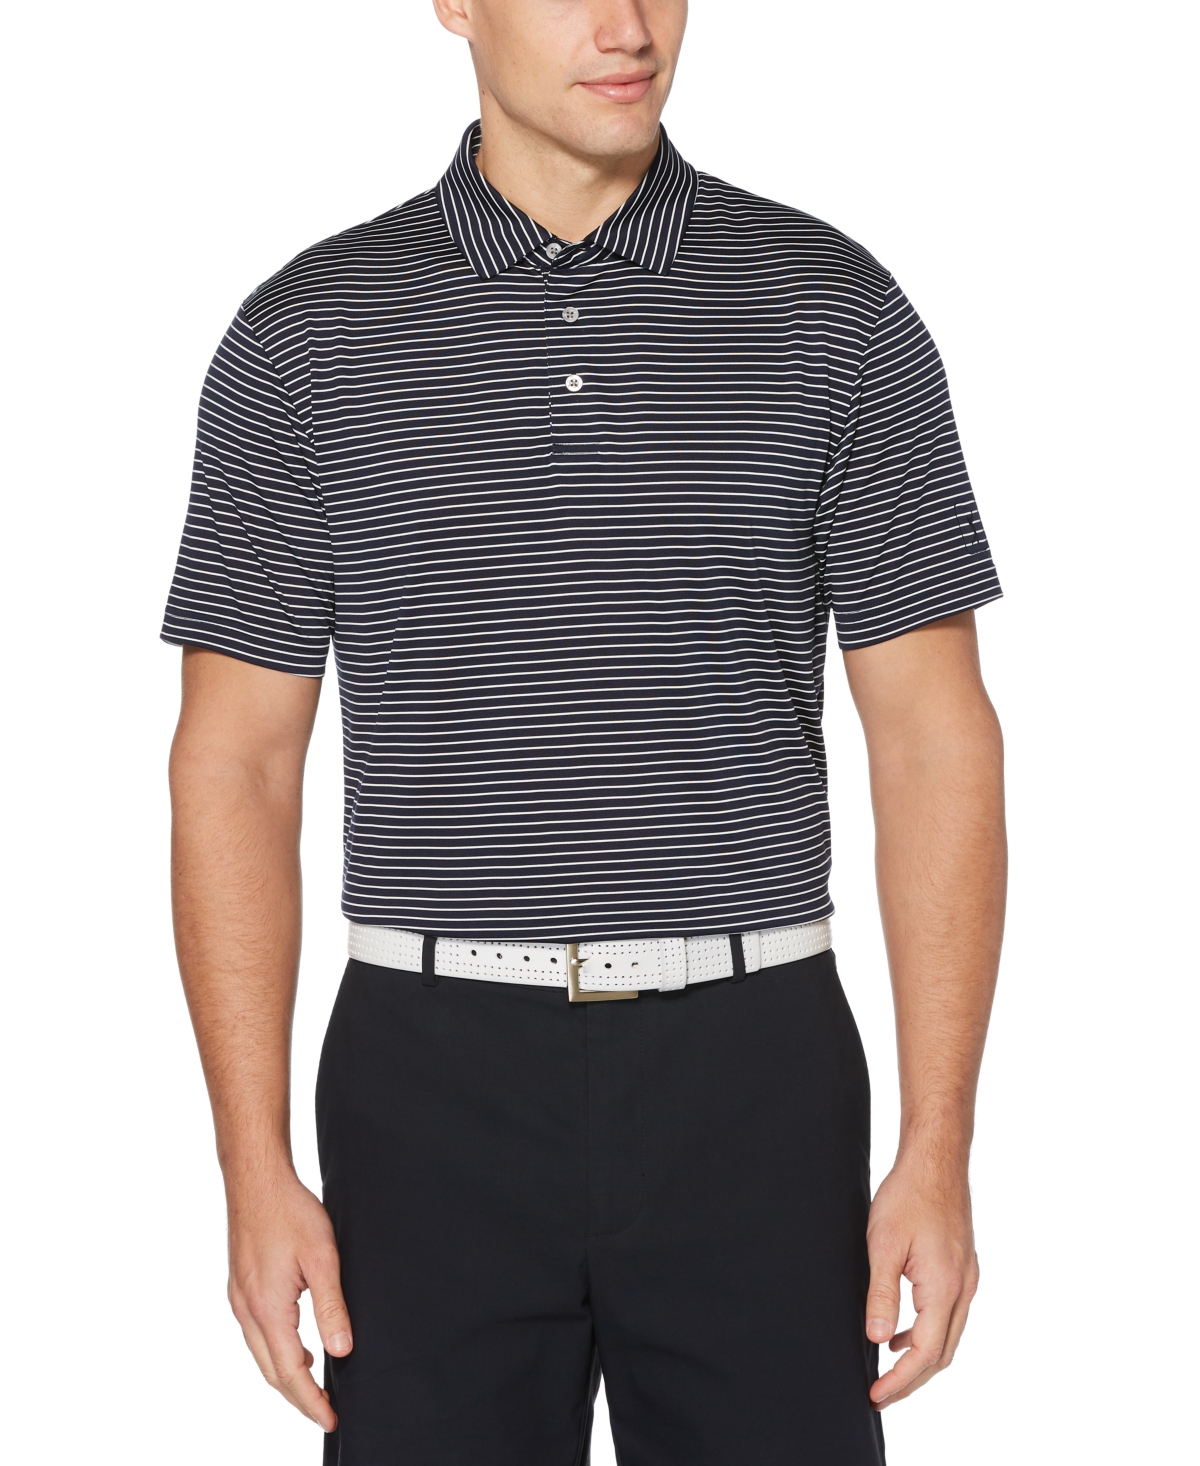 Men's Short Sleeve Feeder Stripe Polo Golf Shirt - Peacoat